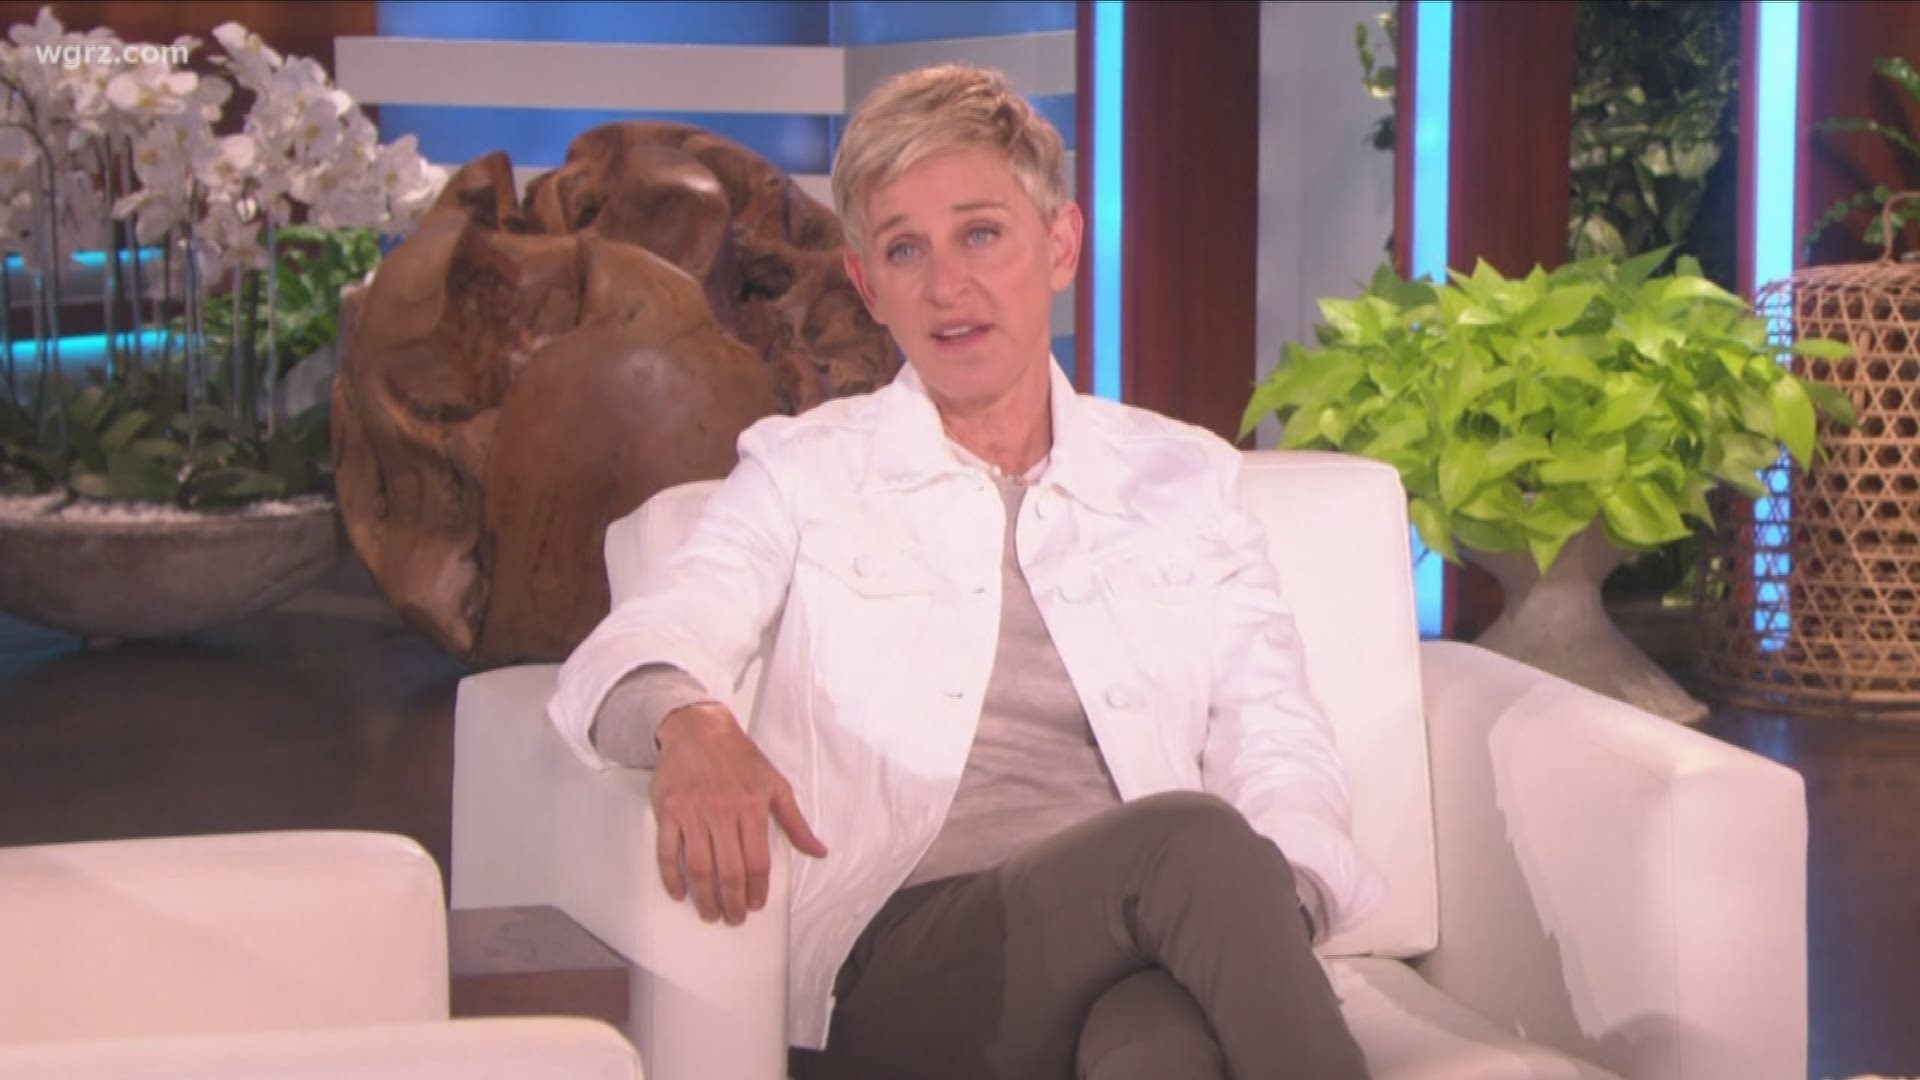 Big Golden Globes honor for Ellen Degeneres